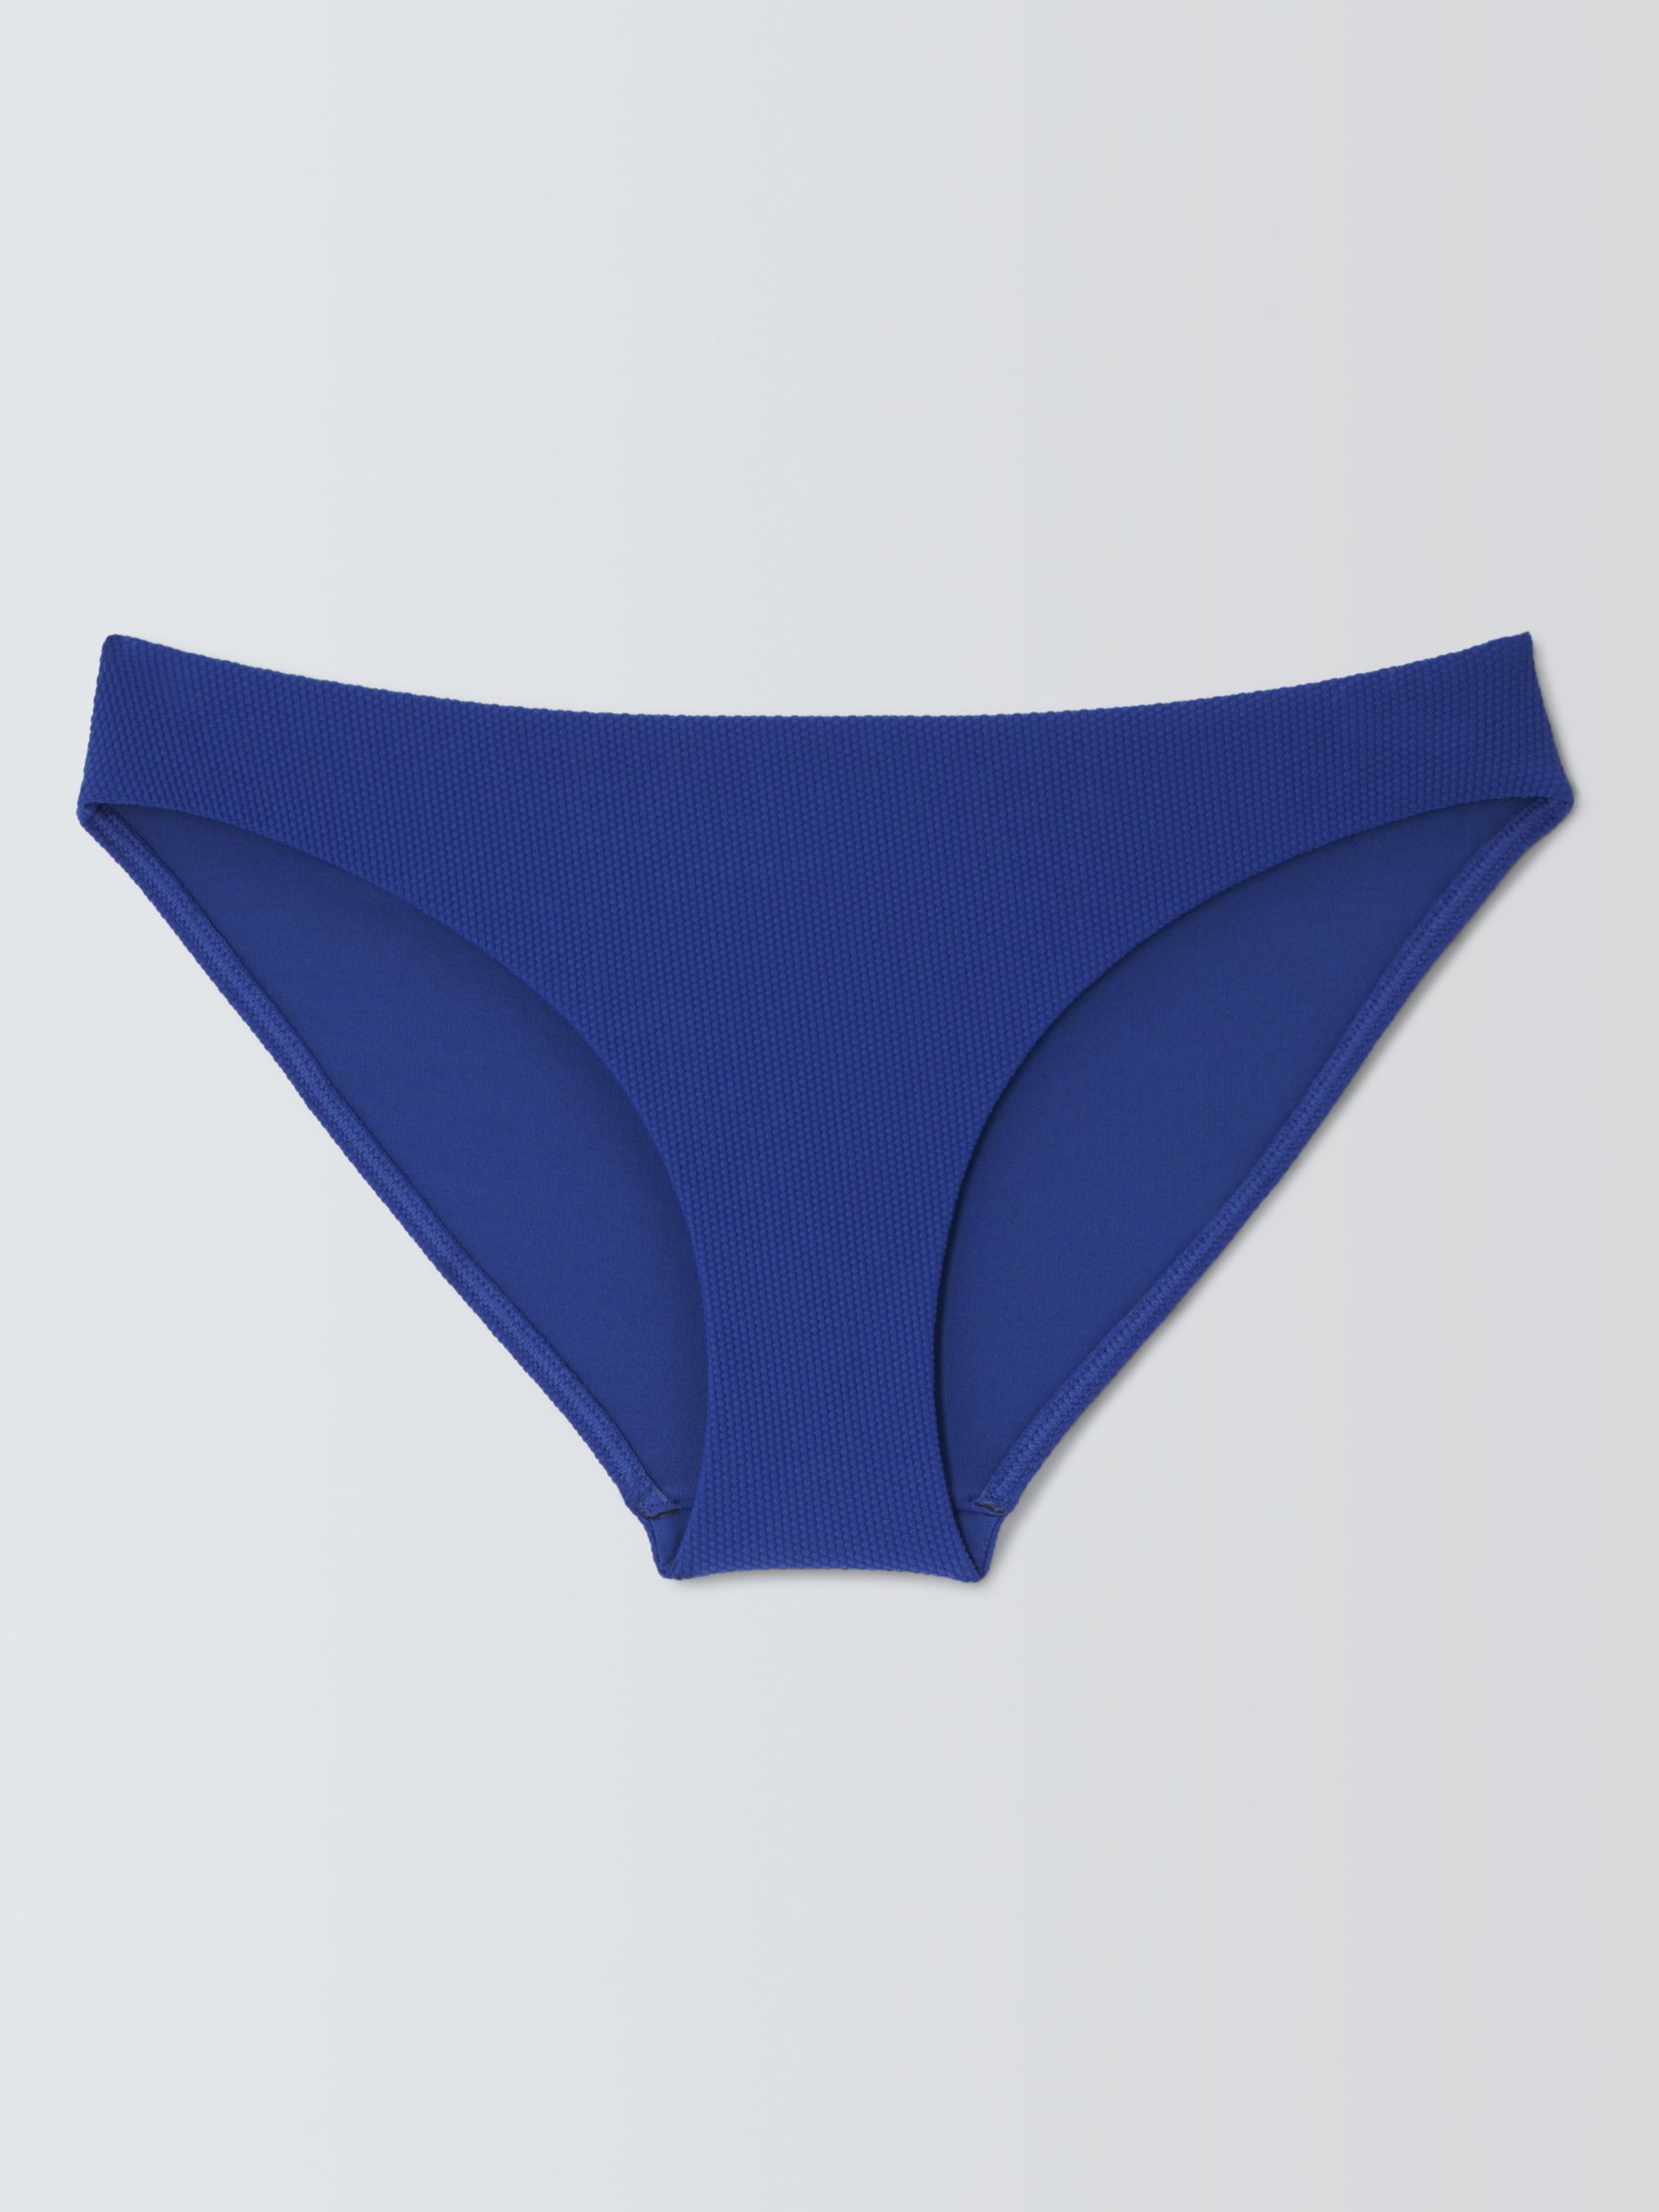 John Lewis Palma Bikini Bottoms, Blue, 10